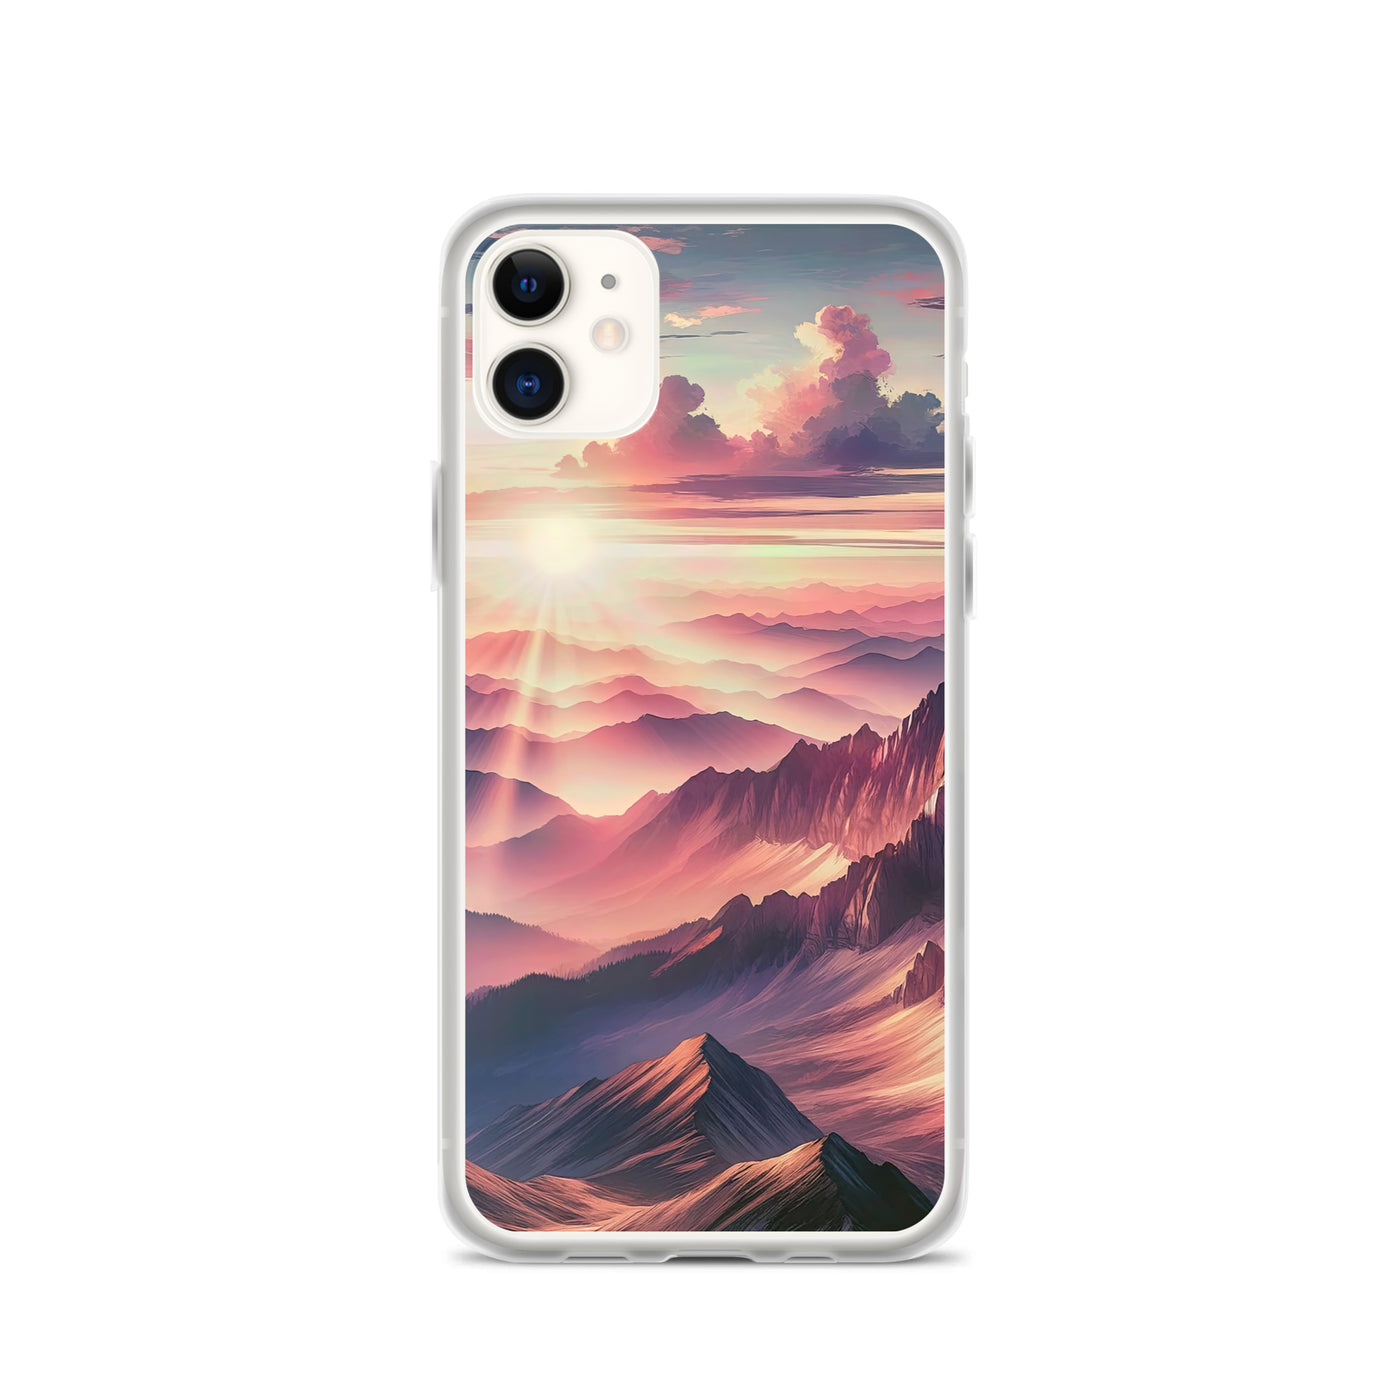 Schöne Berge bei Sonnenaufgang: Malerei in Pastelltönen - iPhone Schutzhülle (durchsichtig) berge xxx yyy zzz iPhone 11